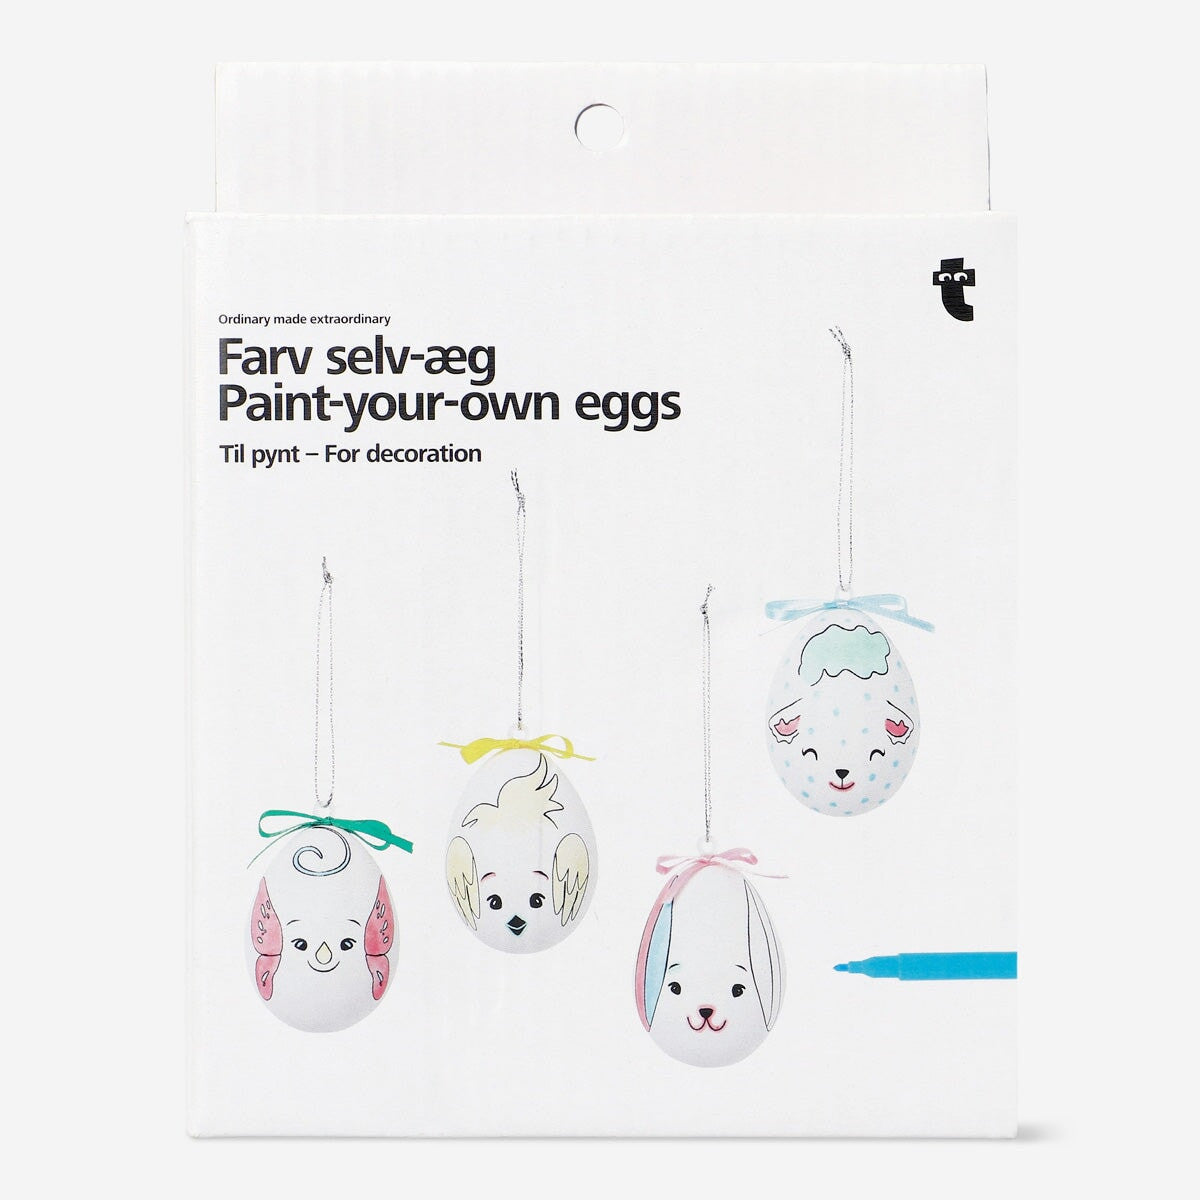 Paint-your-own eggs Hobby Flying Tiger Copenhagen 